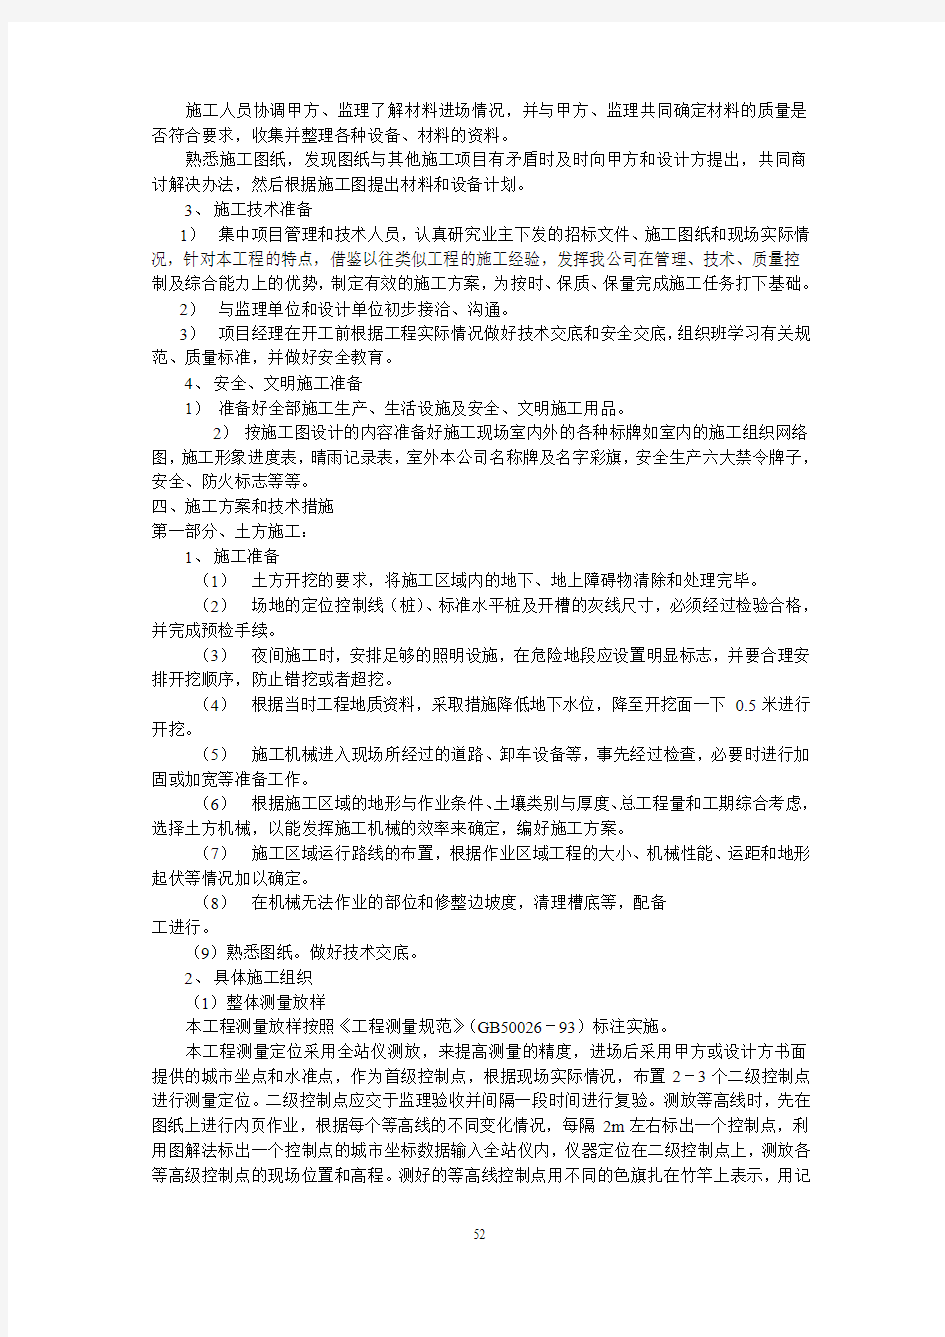 复旦大学新江湾城校区绿化工程公开招标II标的投标文件308